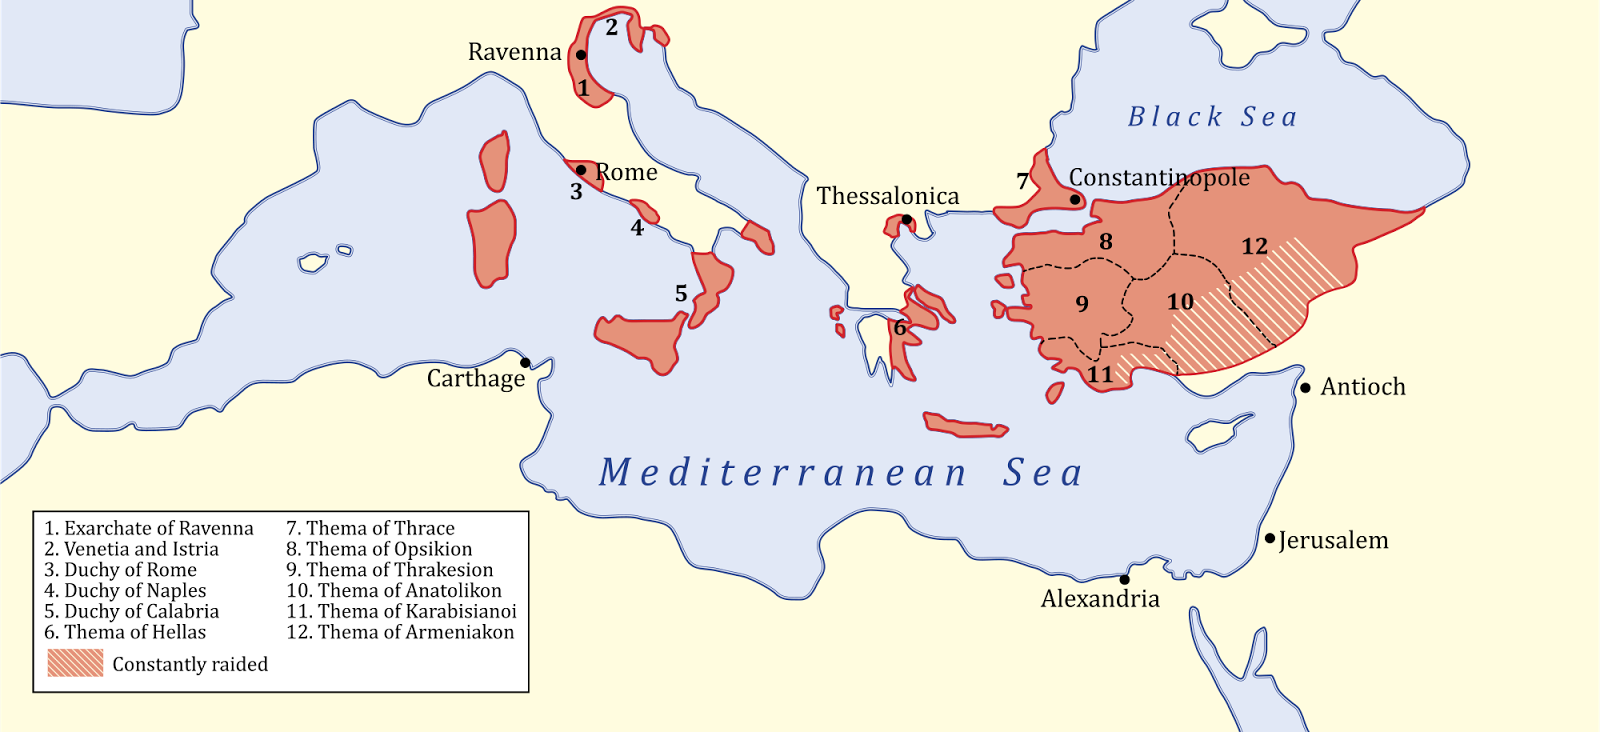 Византийская держава к началу 8 века